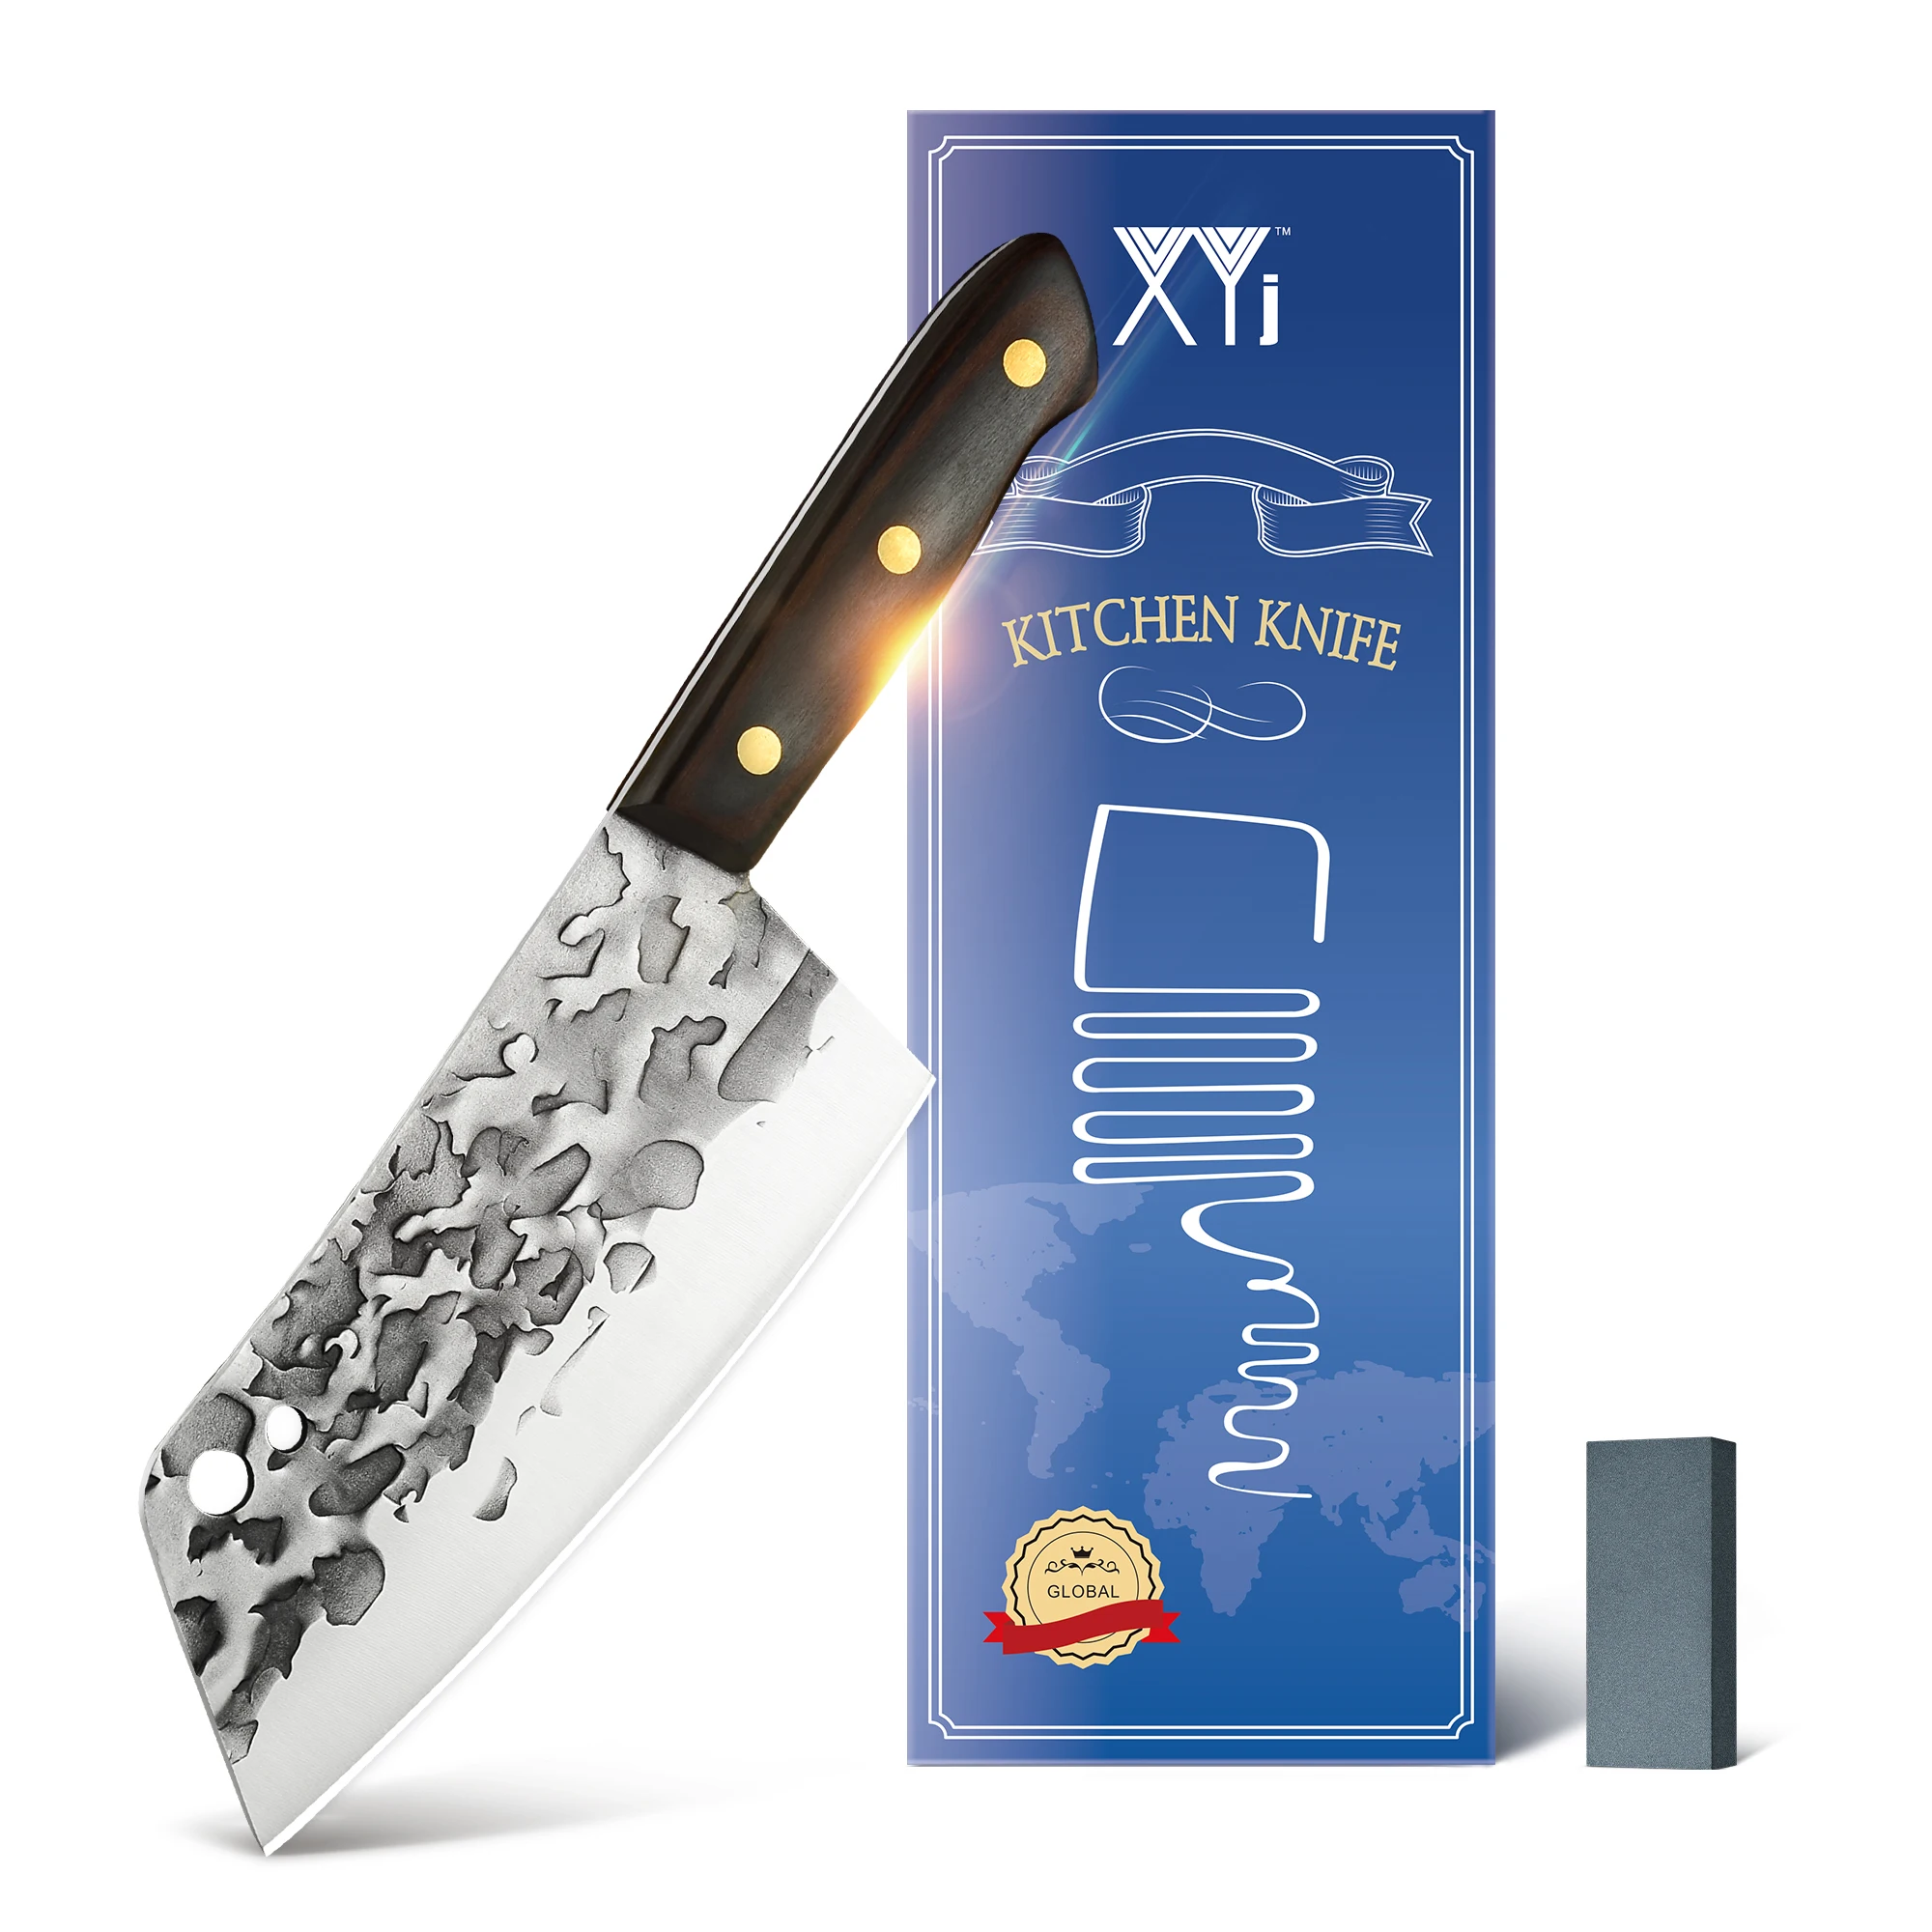 

XYj Мясницкий кухонный нож 7 дюймов, нержавеющая сталь, китайский шеф-повар, нож для мясника, нарезки овощей, мяса, рукоятка из искусственной д...